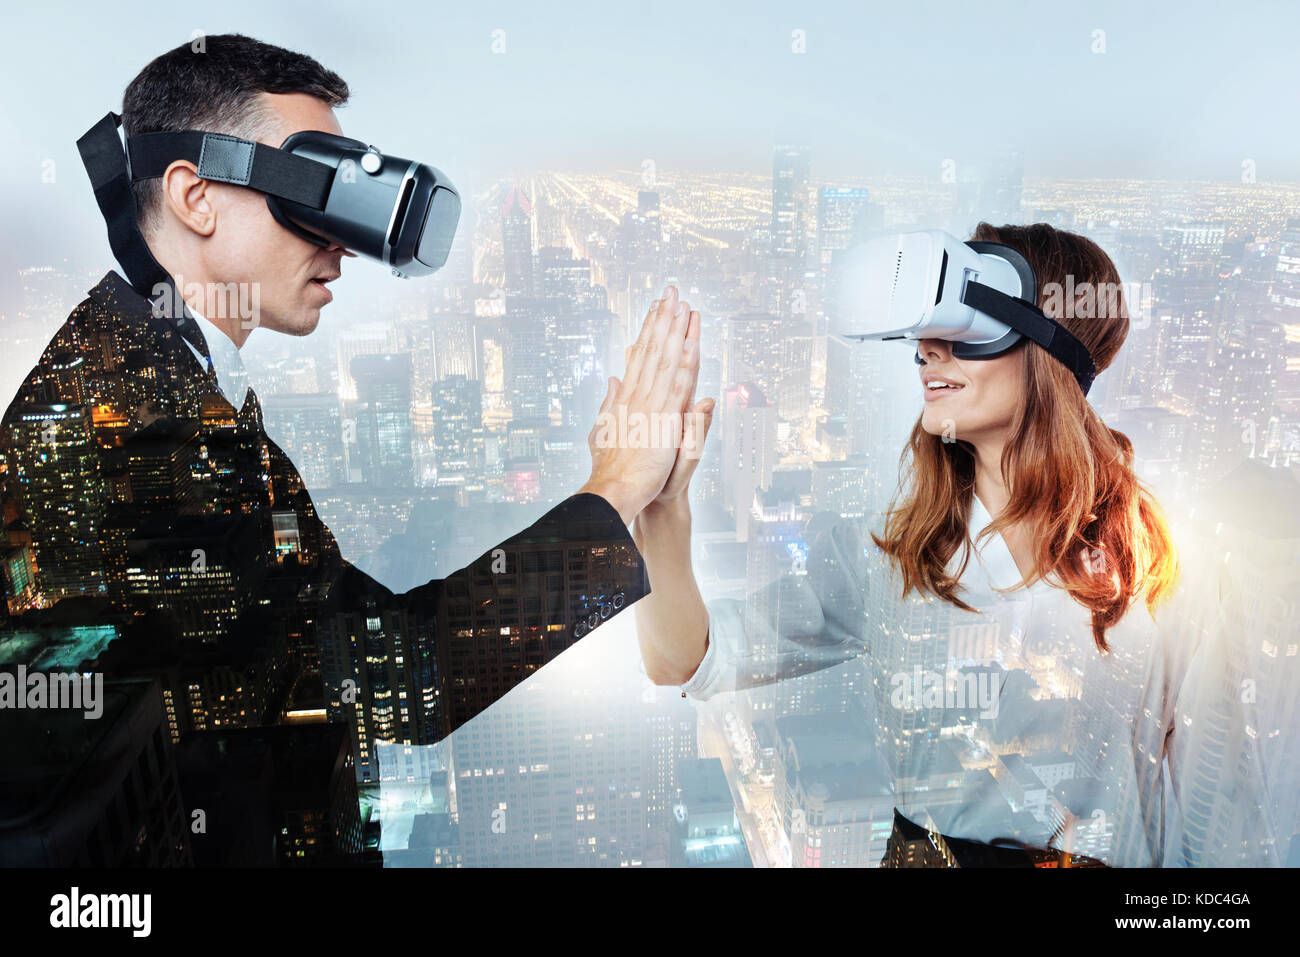 Deux personnes à impressionné par l'appareil de réalité virtuelle Banque D'Images